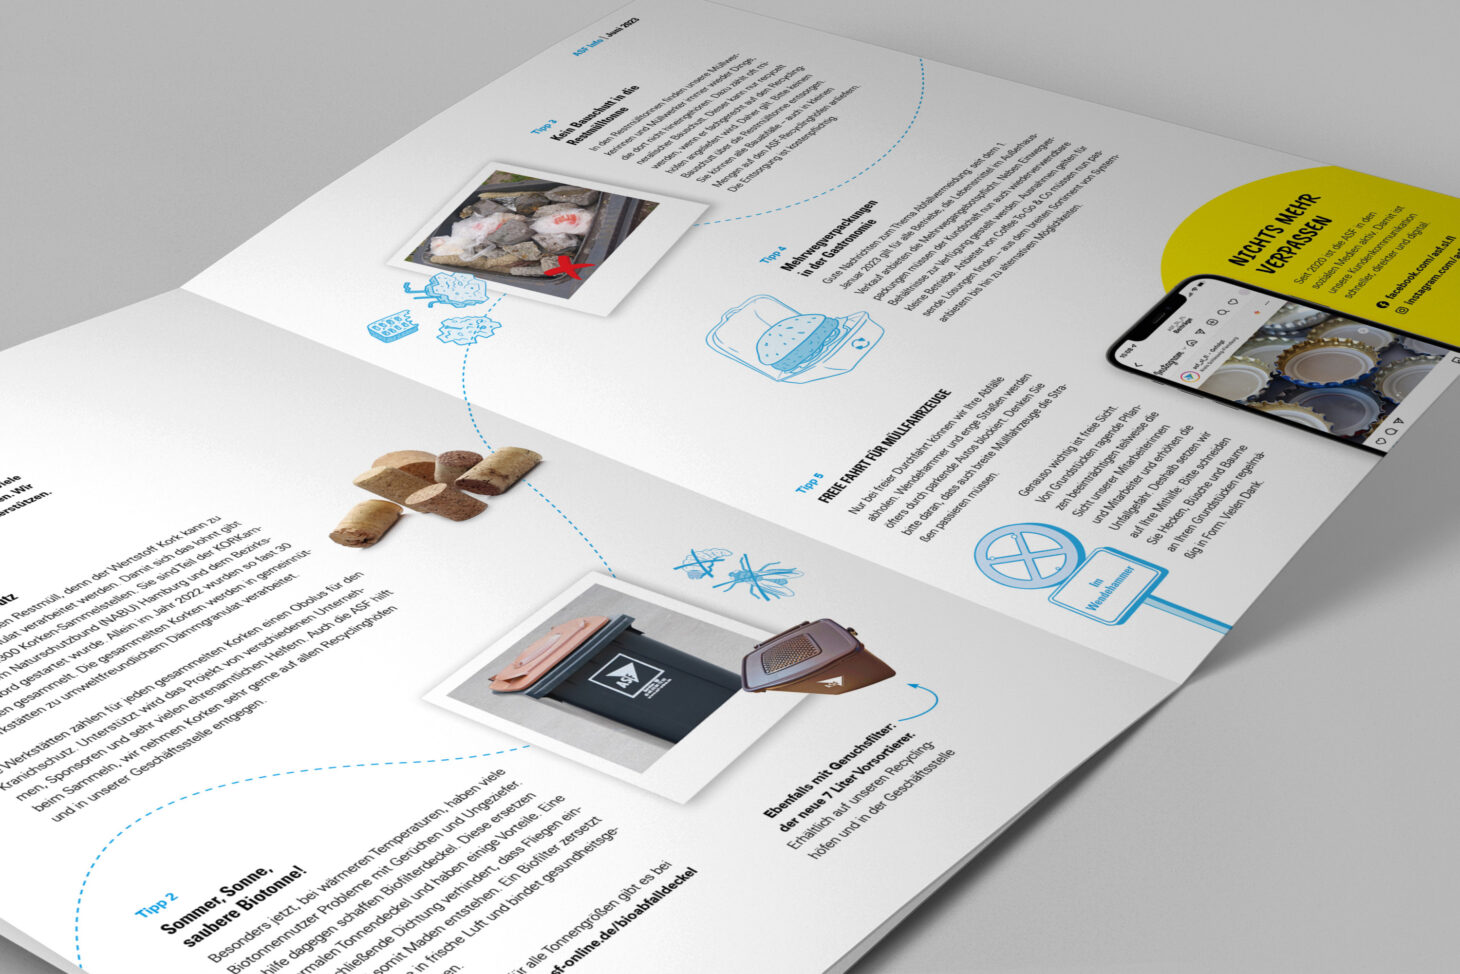 Die Zeitschrift ASF Info liegt aufgeschlagen auf einer Oberfläche, es sind Biotonnen, blaue Illustrationen und ein Smartphone zu sehen